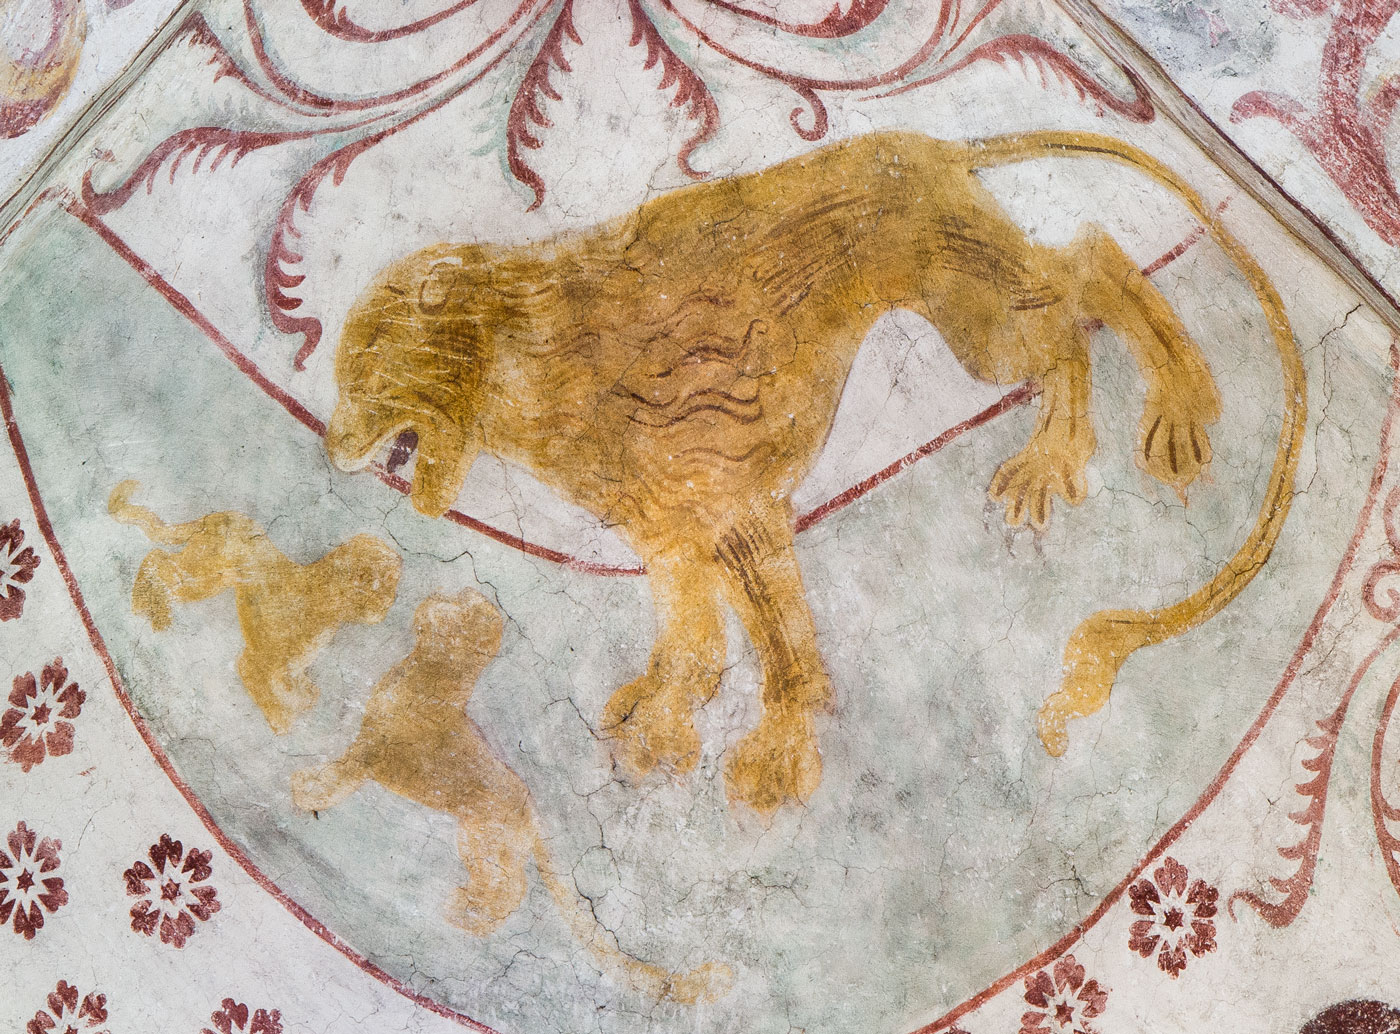 Lejonhannen väcker sina ungar till liv, symbol för Kristi uppståndelse - Vänge kyrka